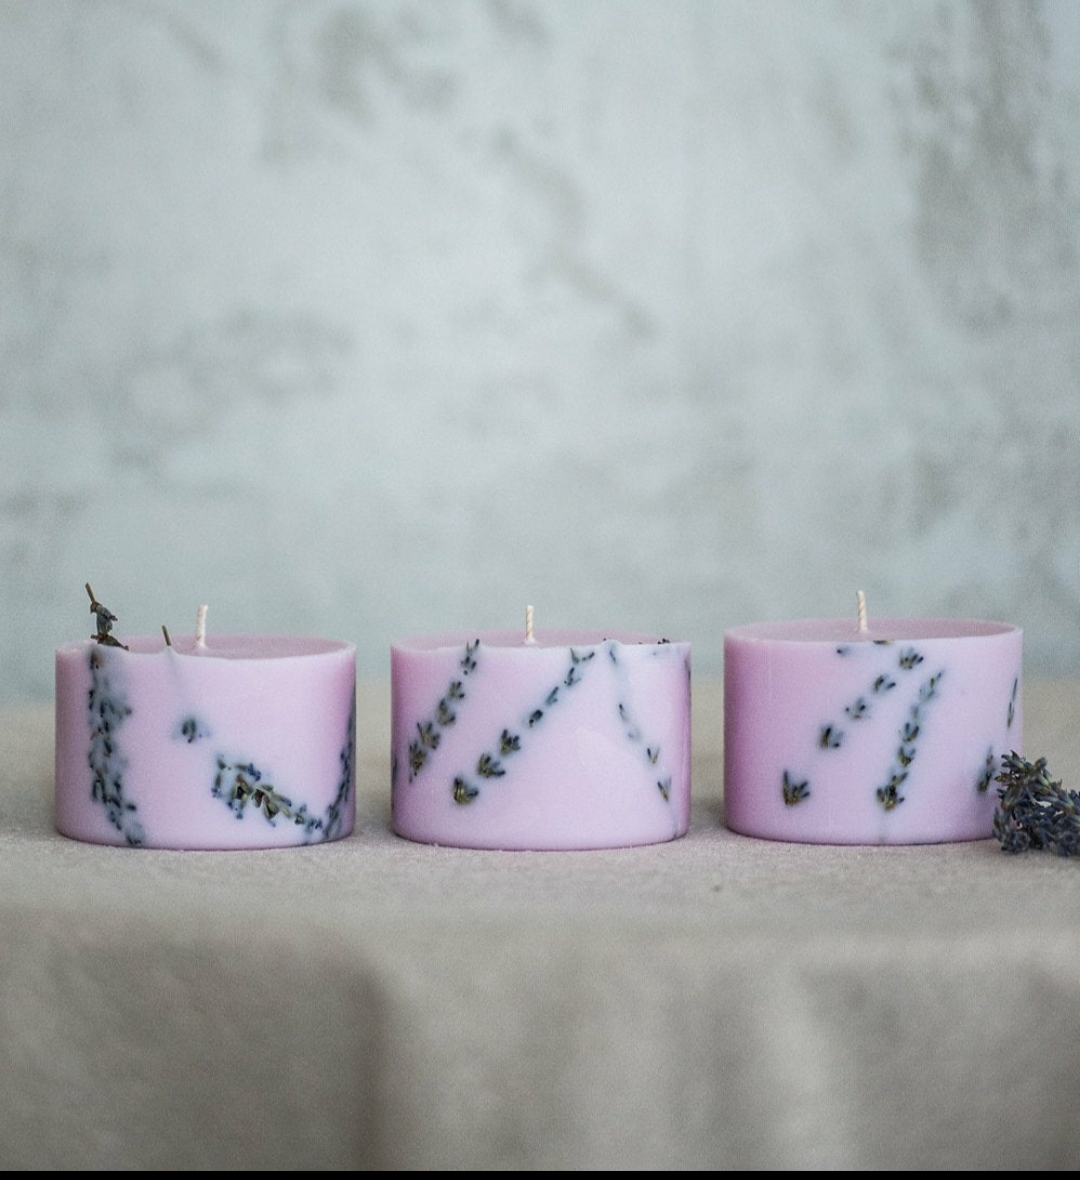 Nến sáp đậu nành màu tím nhạt, hương hoa lavender, trang trí cành lavender khô